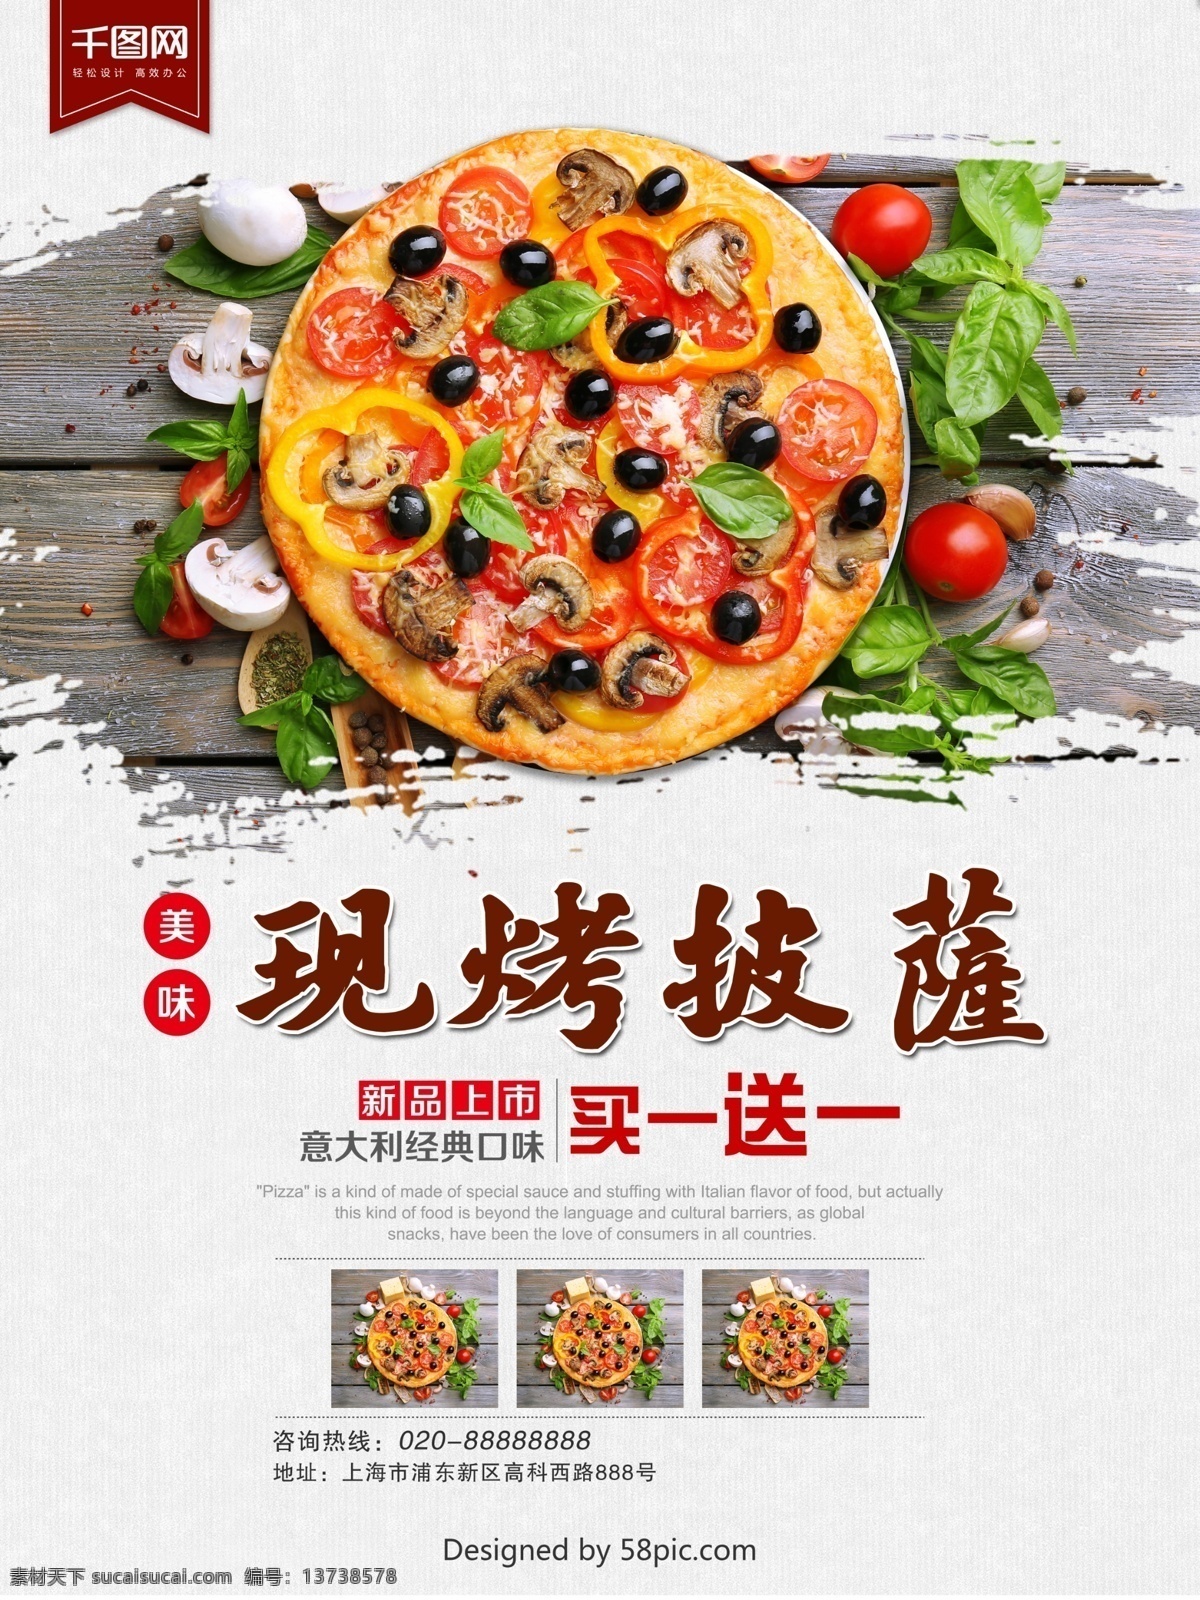 美味 现 烤 披萨 促销 海报 美食海报 披萨海报 促销海报 美味披萨 现烤披萨 水果 蔬菜 意大利披萨 经典披萨 西餐